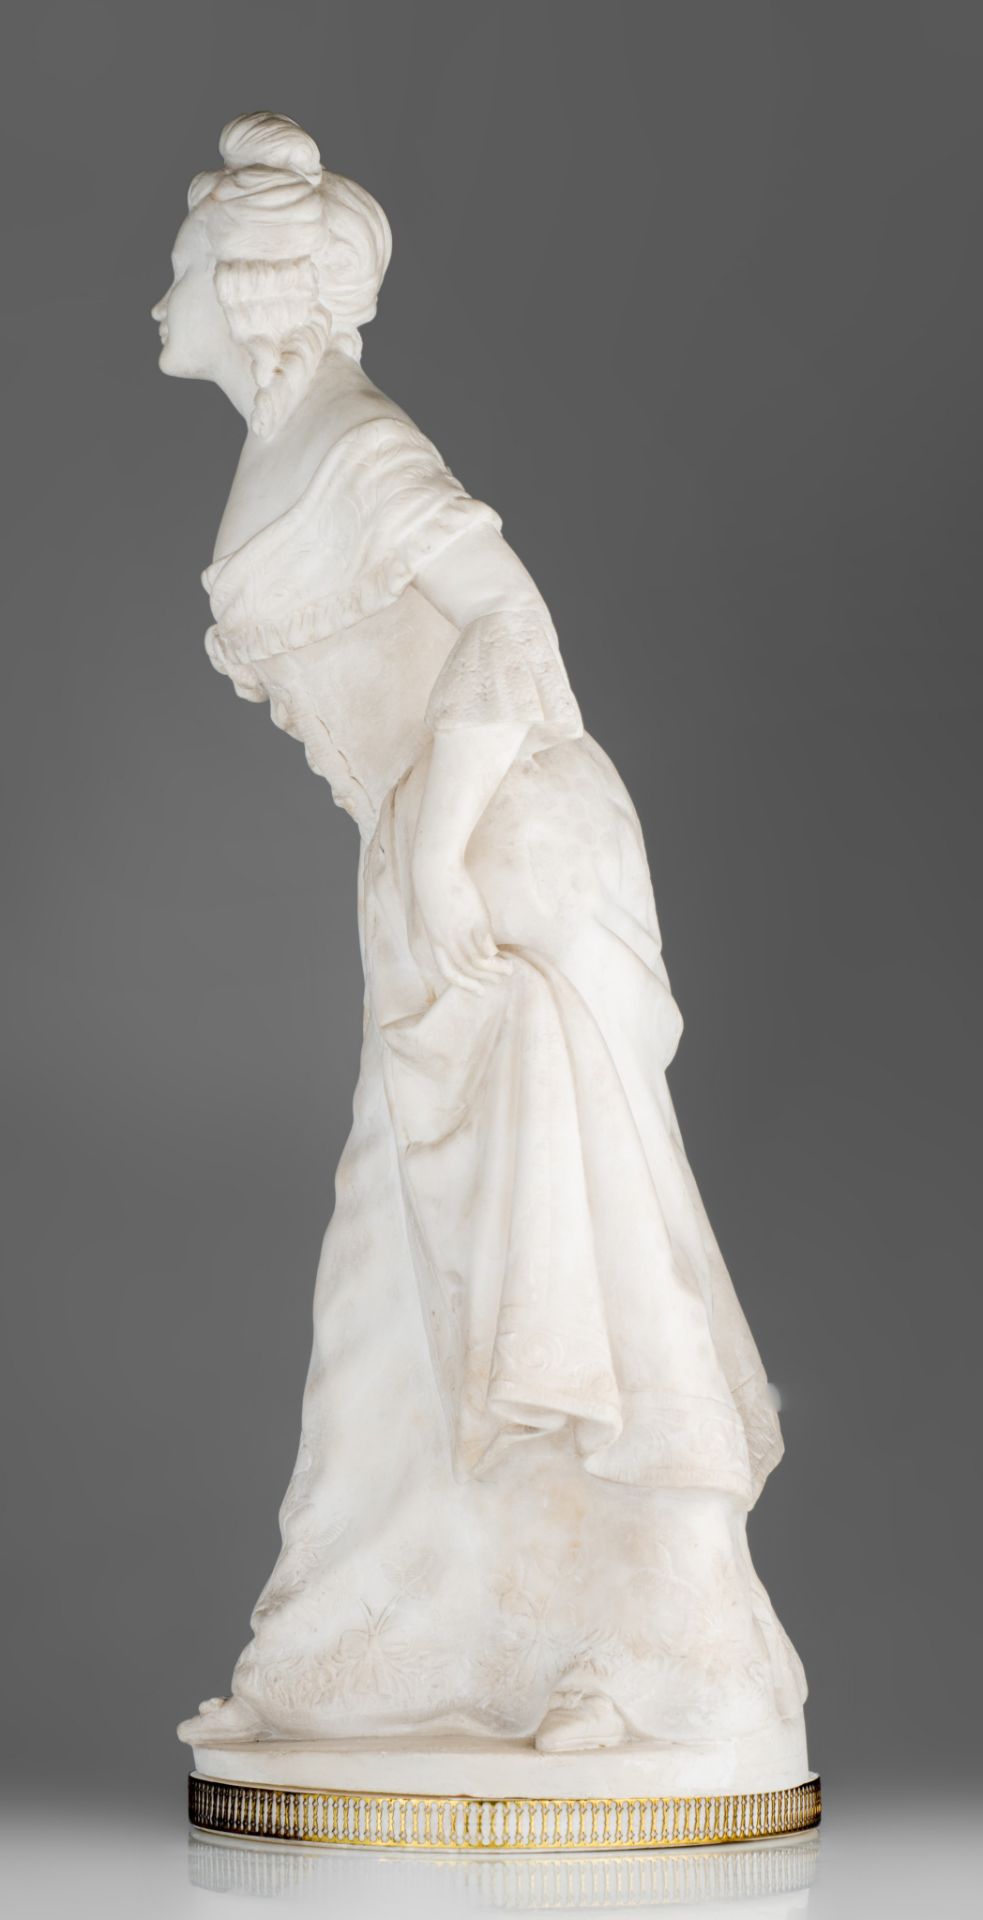 Dominique Alonzo (act. 1910-1930), 'la Révérence', Carrara marble, H 67 cm - Image 3 of 16